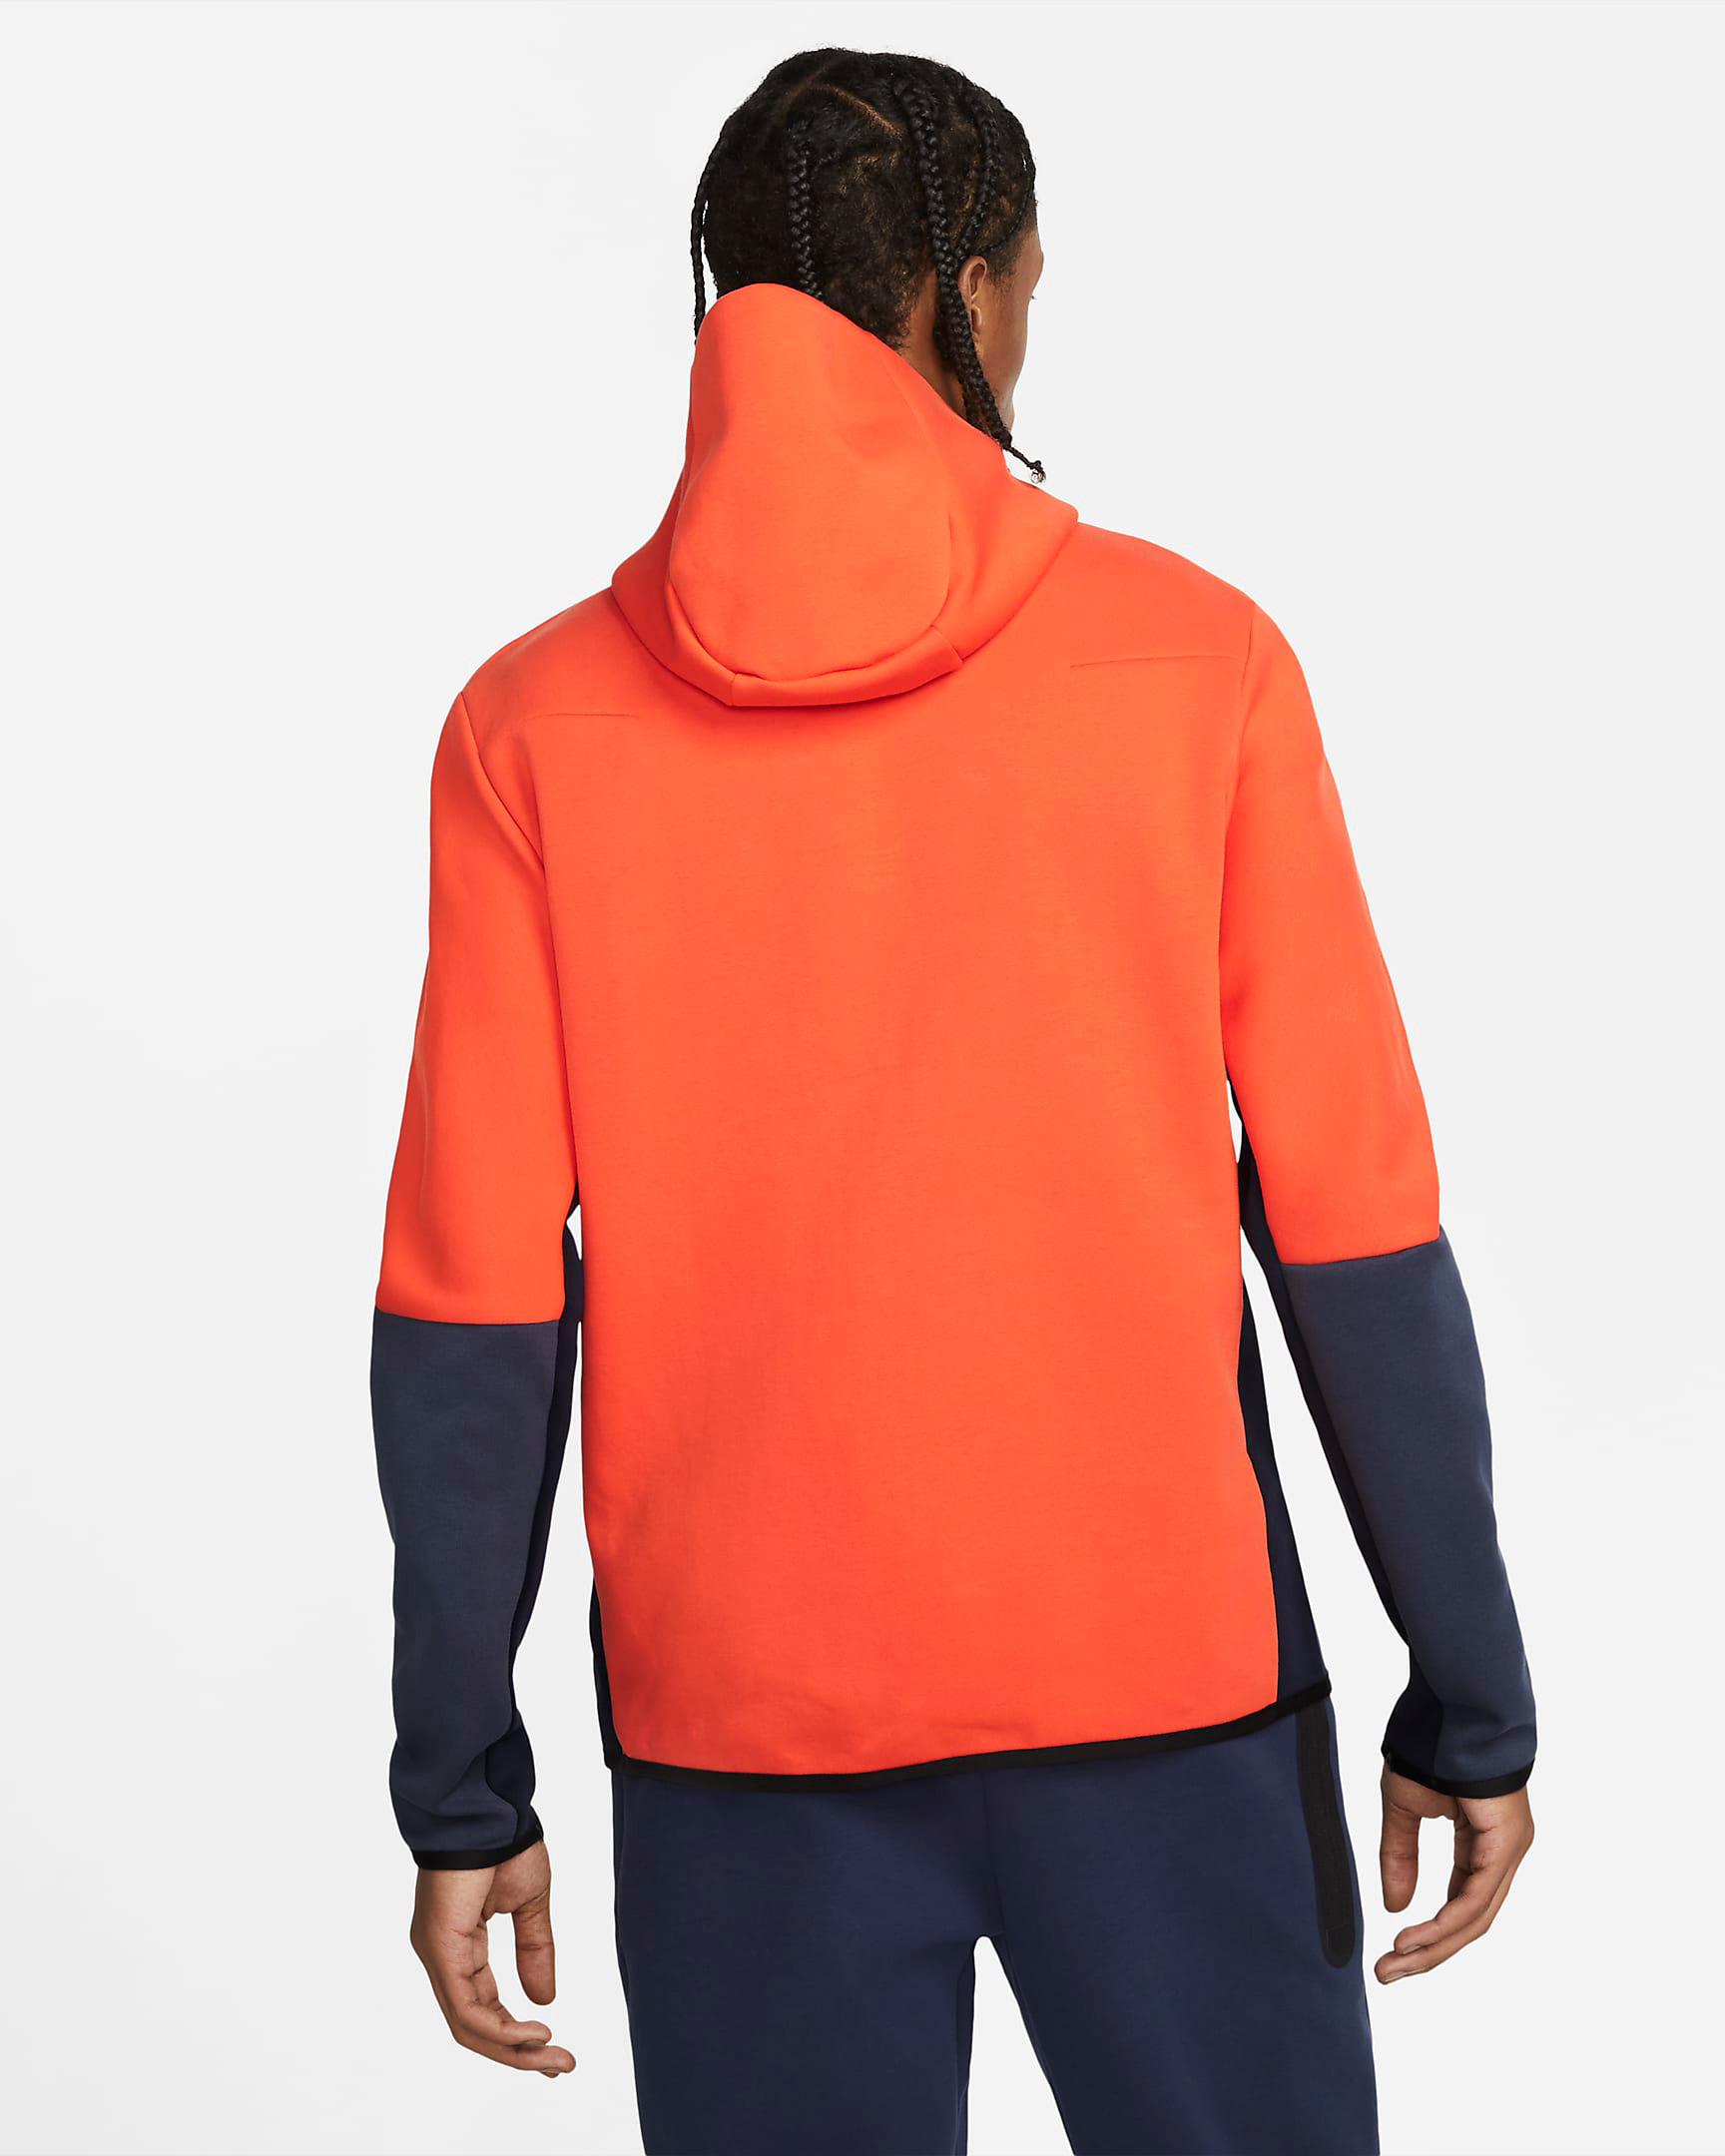 Nike Tech Fleece Hoodie in Team Orange Black Navy